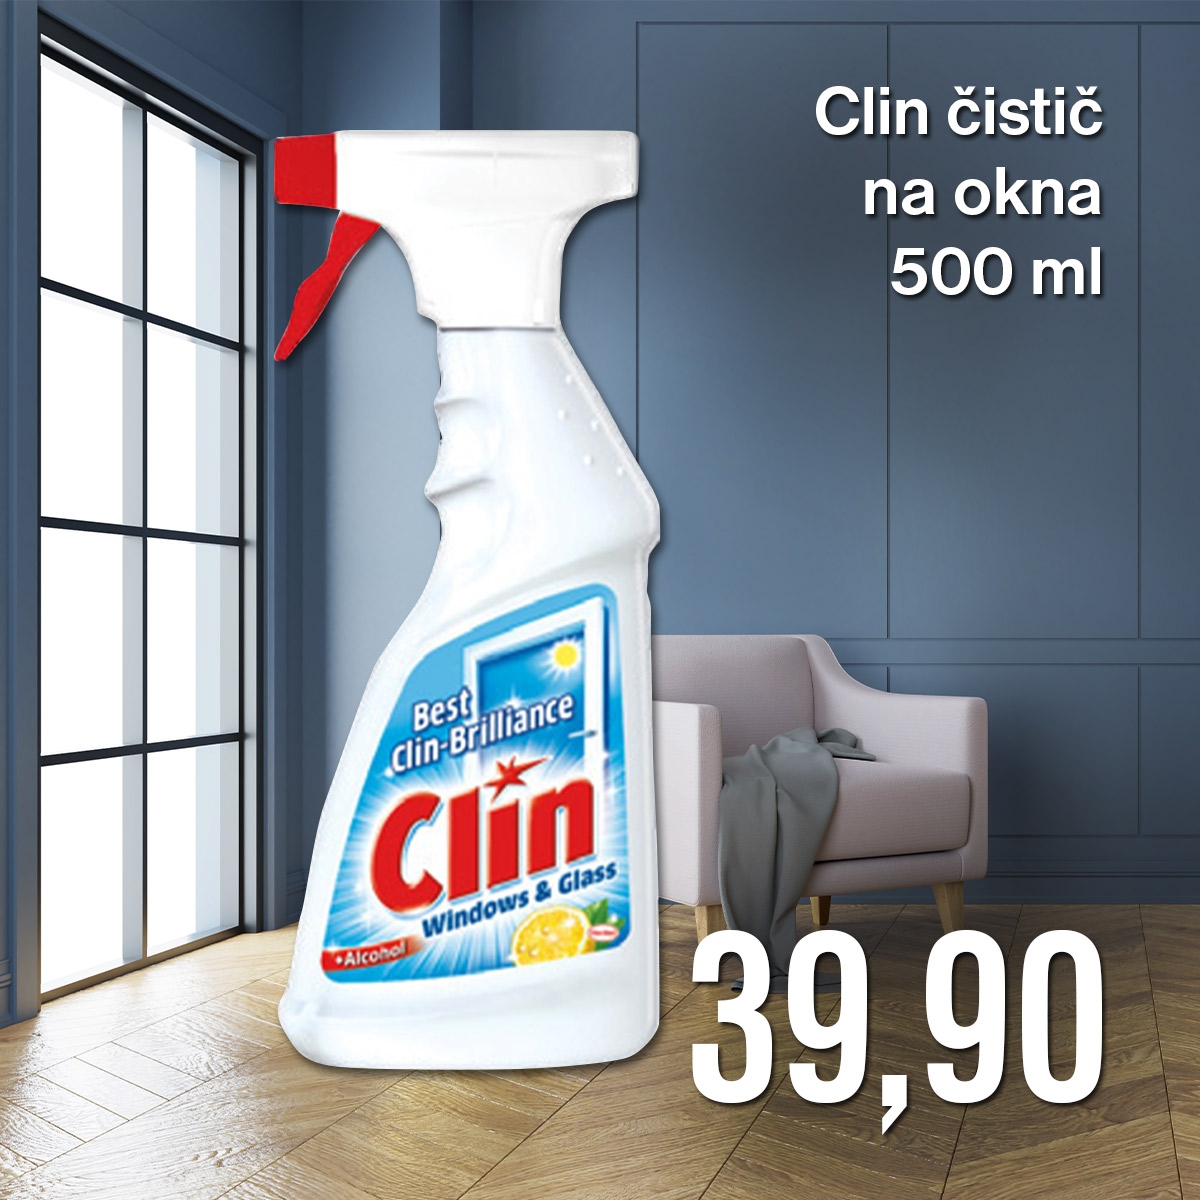 Clin čistič na okna citrus 500 ml